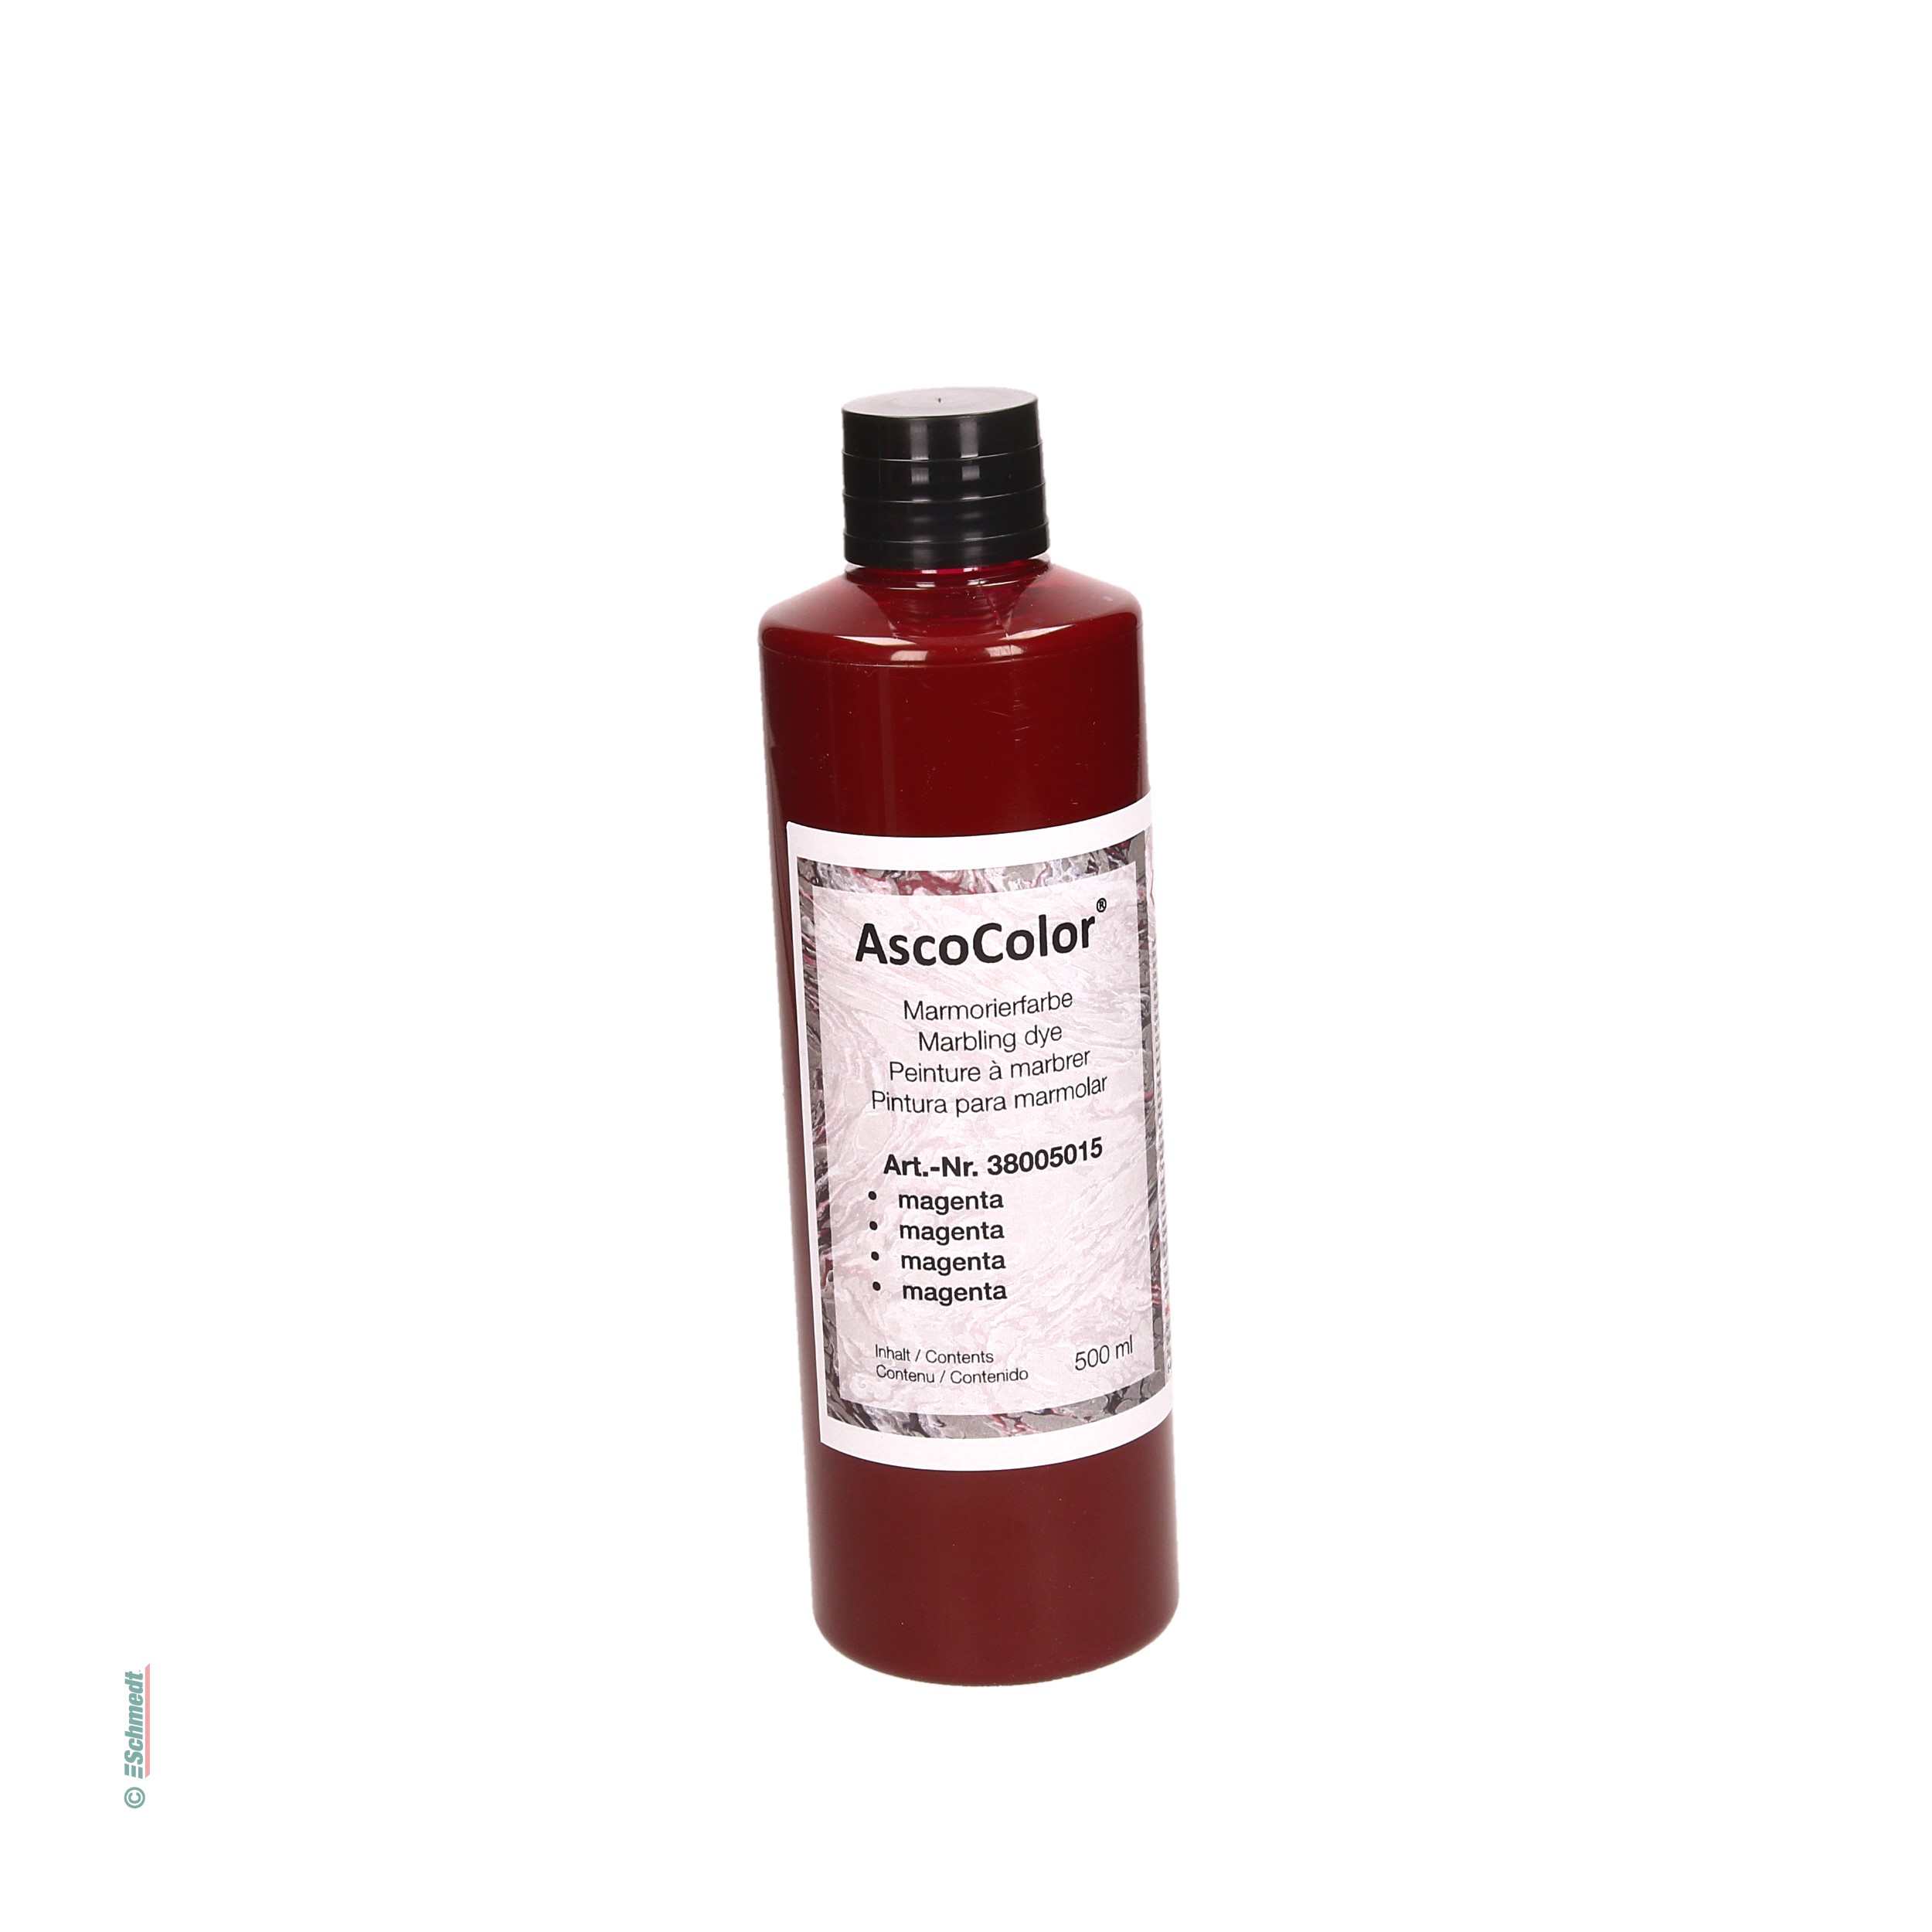 AscoColor® Marmorierfarbe - Farbe magenta - Gebindegröße Flasche / 500 ml - zur Herstellung marmorierter Papiere... - Bild-1